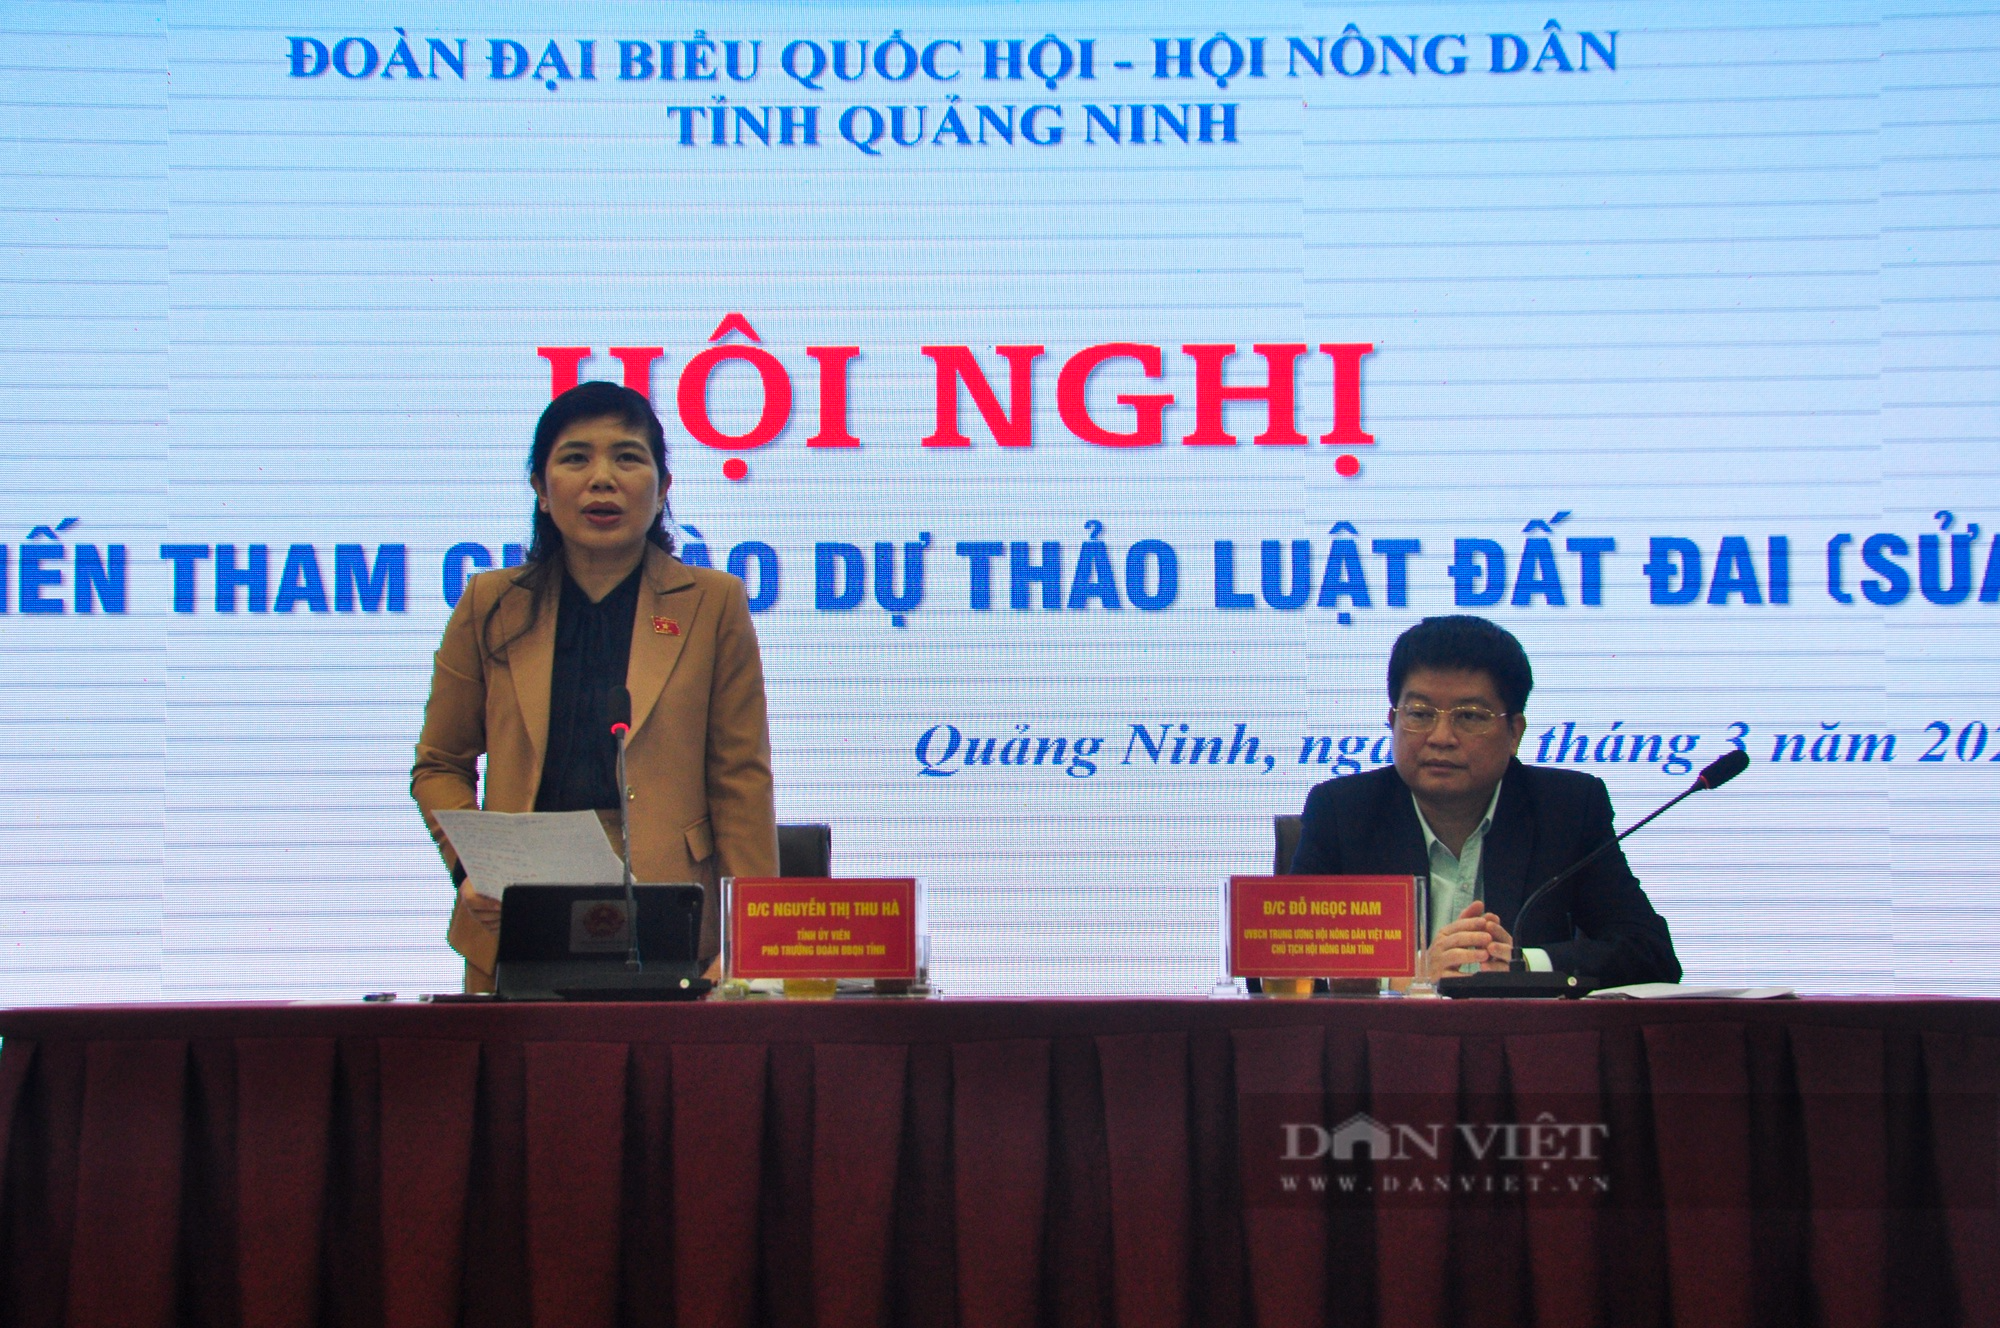 Dự thảo Luật đất đai (sửa đổi), người dân Quảng Ninh quan tâm hỗ trợ tái định cư khi thu hồi đất - Ảnh 4.